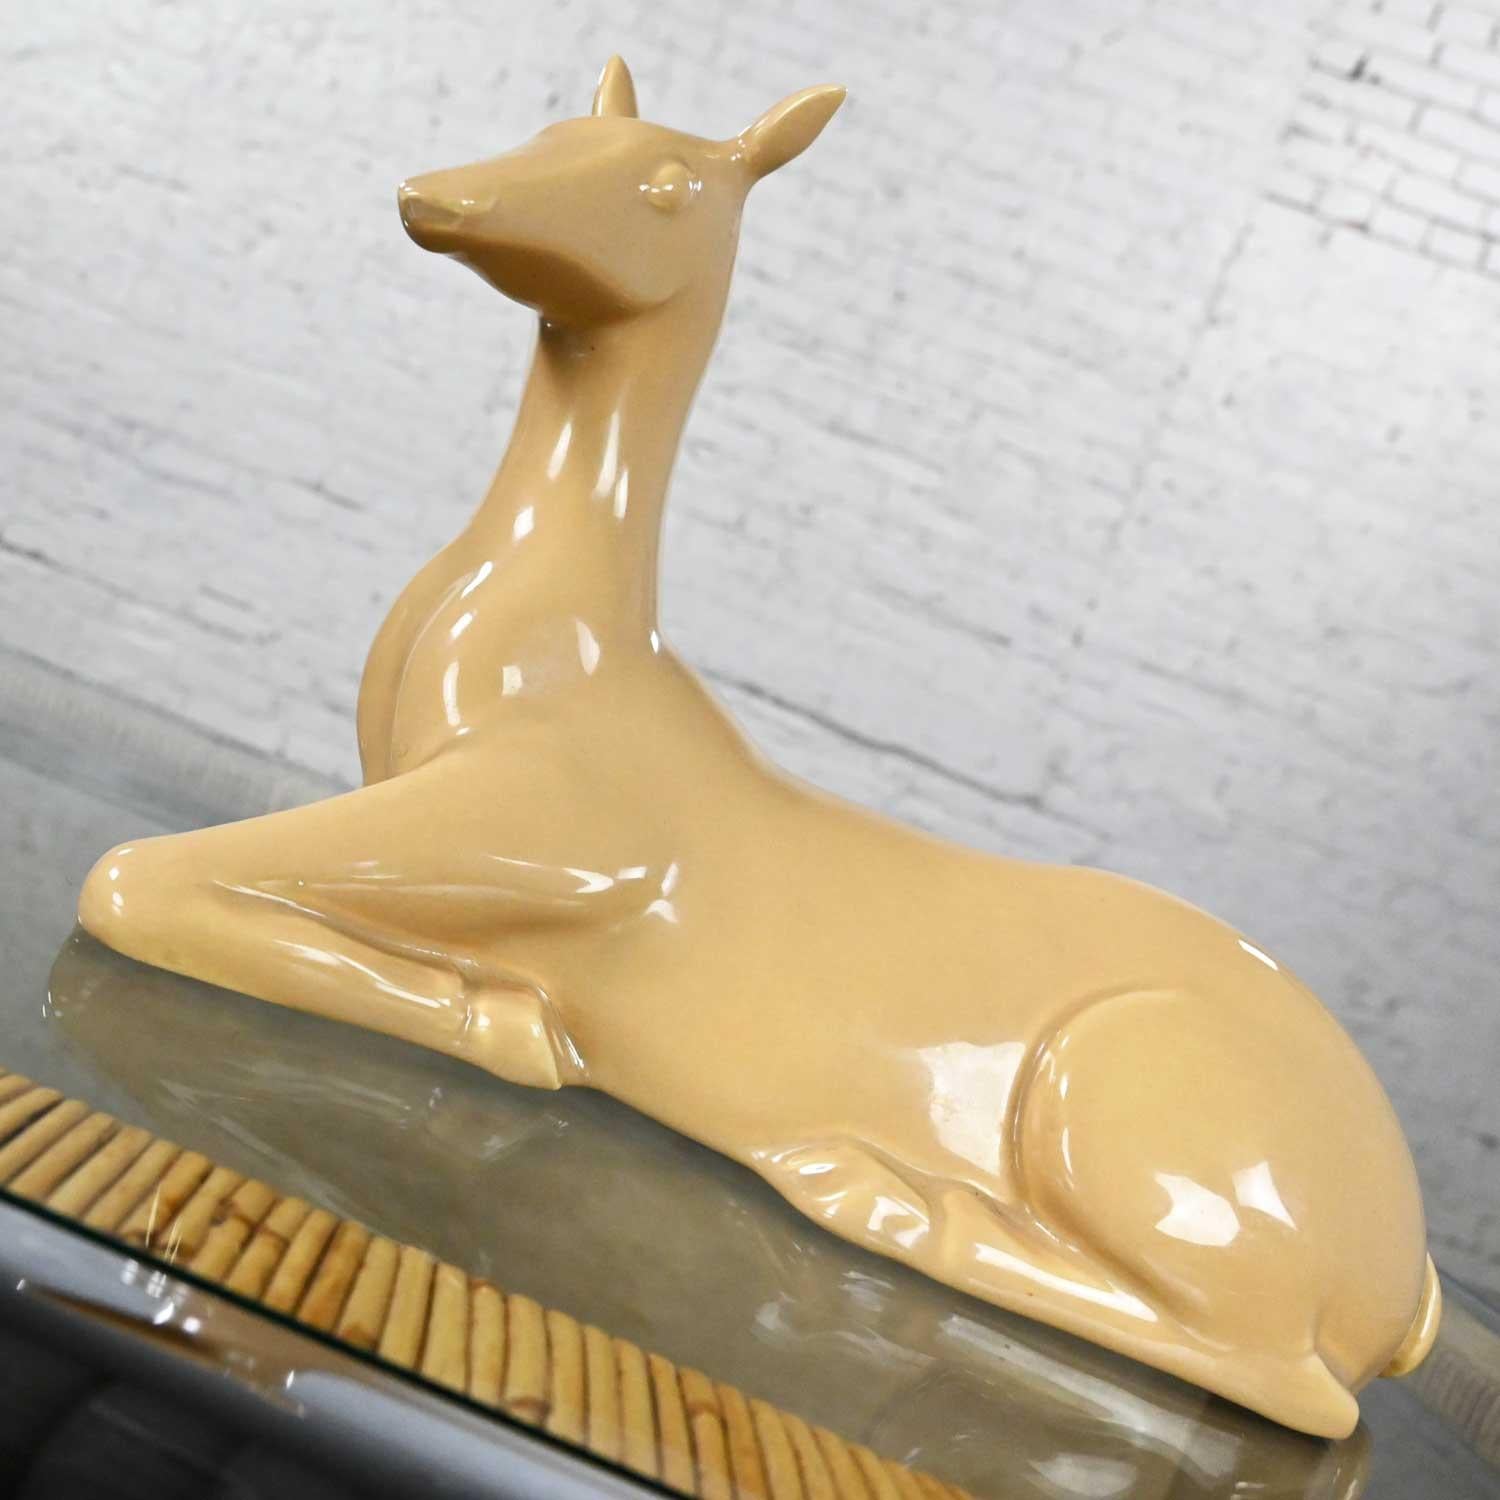 American Vintage MCM to Modern Art Deco Revival Caramel Colored Ceramic Deer by Jaru 1975